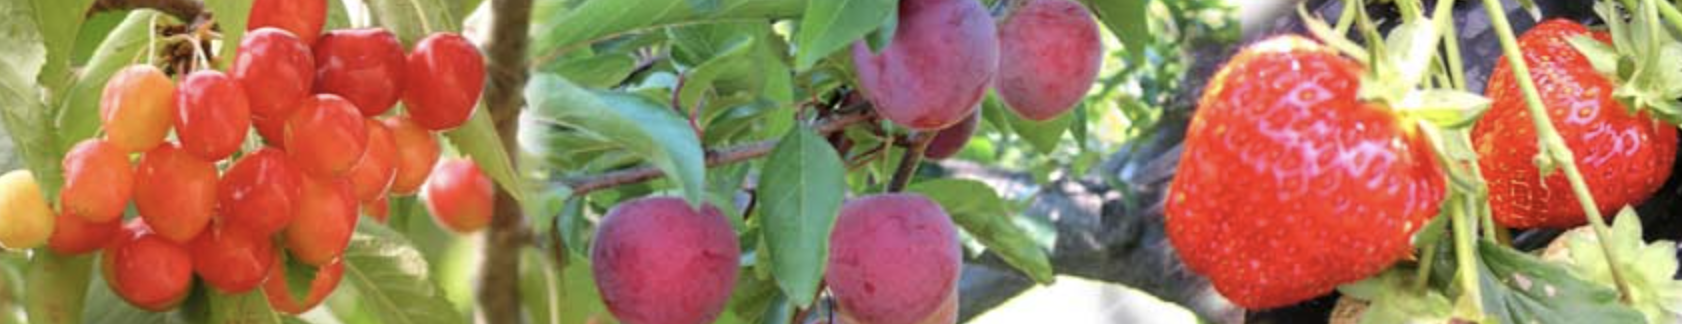 低農薬を心がけた甘くて美味しい果物が味わえる「八剣山果樹園」